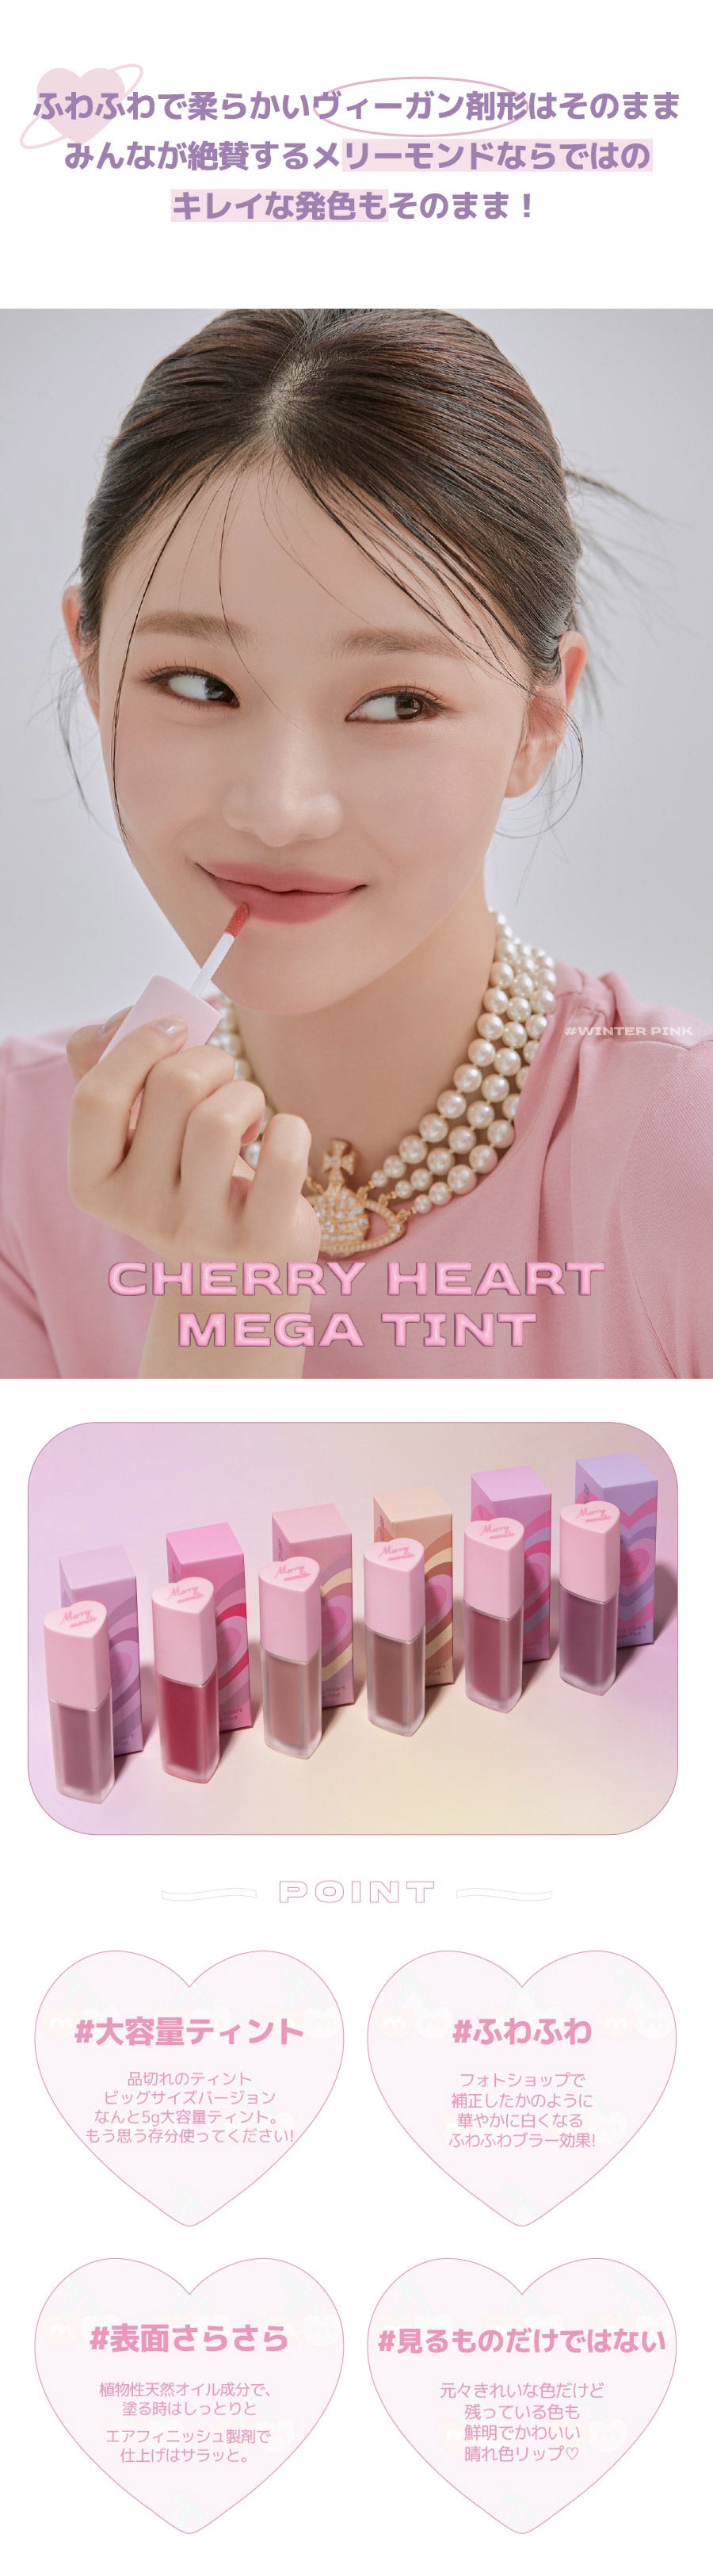 【国内配送】 Merry monde(メリーモンド) : 2023 S/S チェリーハート メガ ティント 5g Cherry Heart Mega Tint ティント 【国内配送：ネコポス】